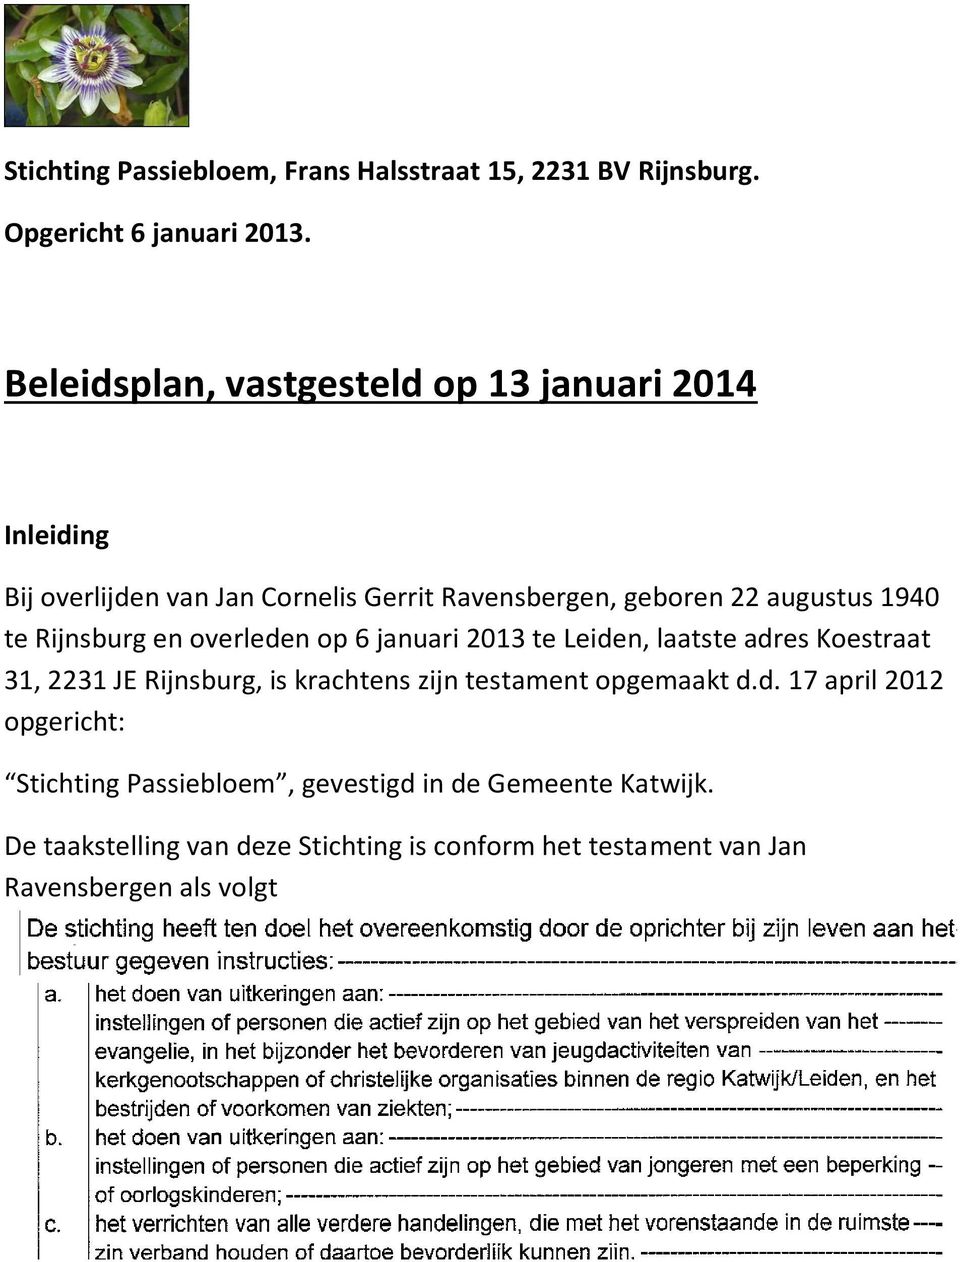 Rijnsburg en overleden op 6 januari 2013 te Leiden, laatste adres Koestraat 31, 2231 JE Rijnsburg, is krachtens zijn testament